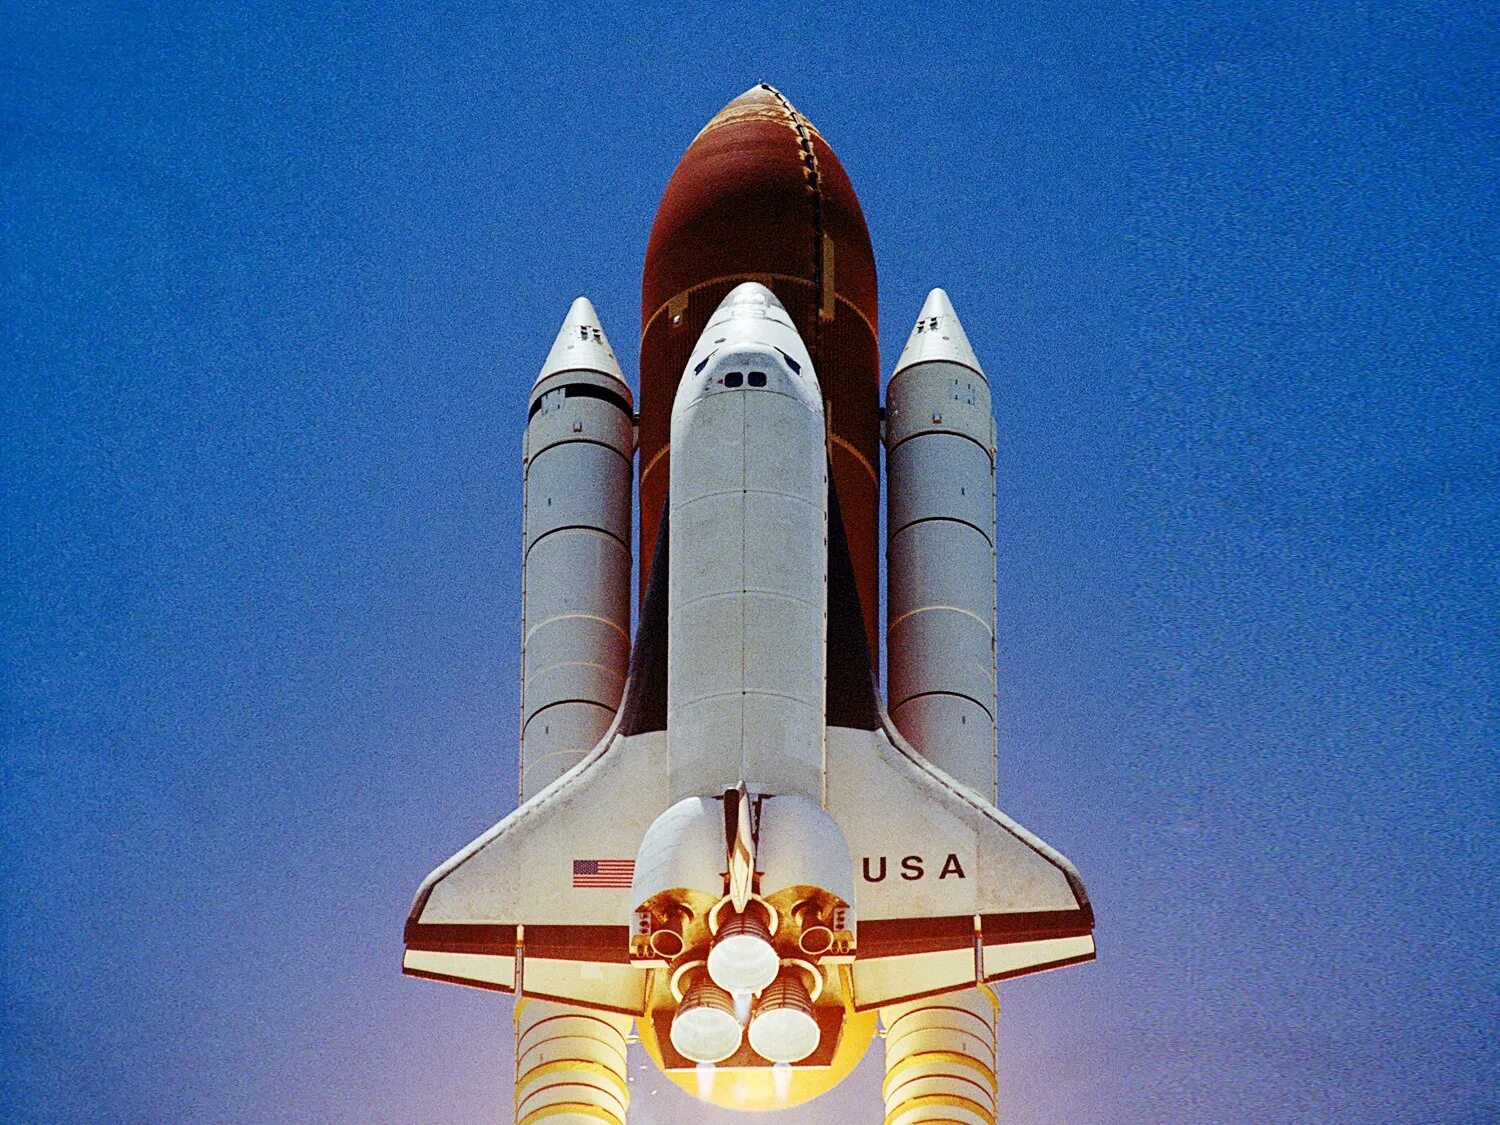 Спейс шаттл 1981. Спейс шаттл космический корабль. Шаттл Колумбия 1981. Спэйс шаттл «Колумбия» 1981.